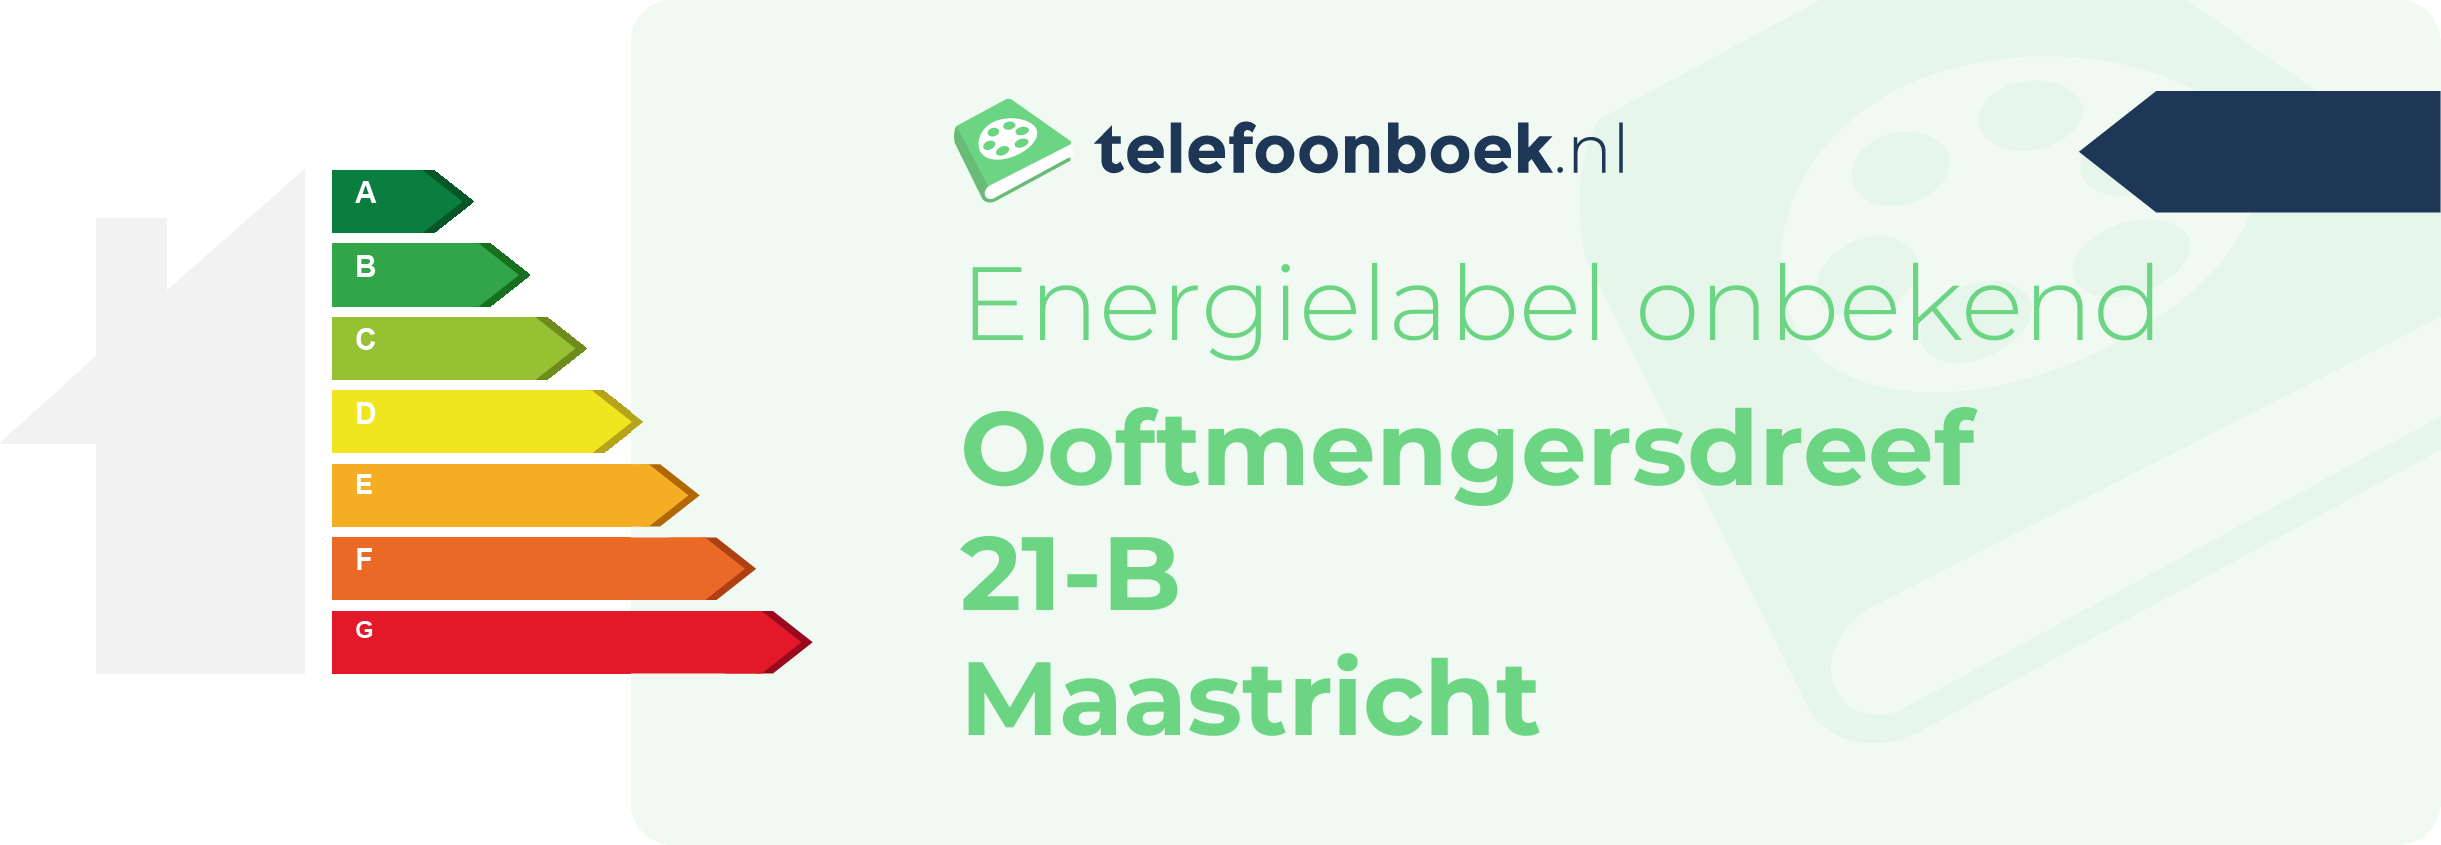 Energielabel Ooftmengersdreef 21-B Maastricht